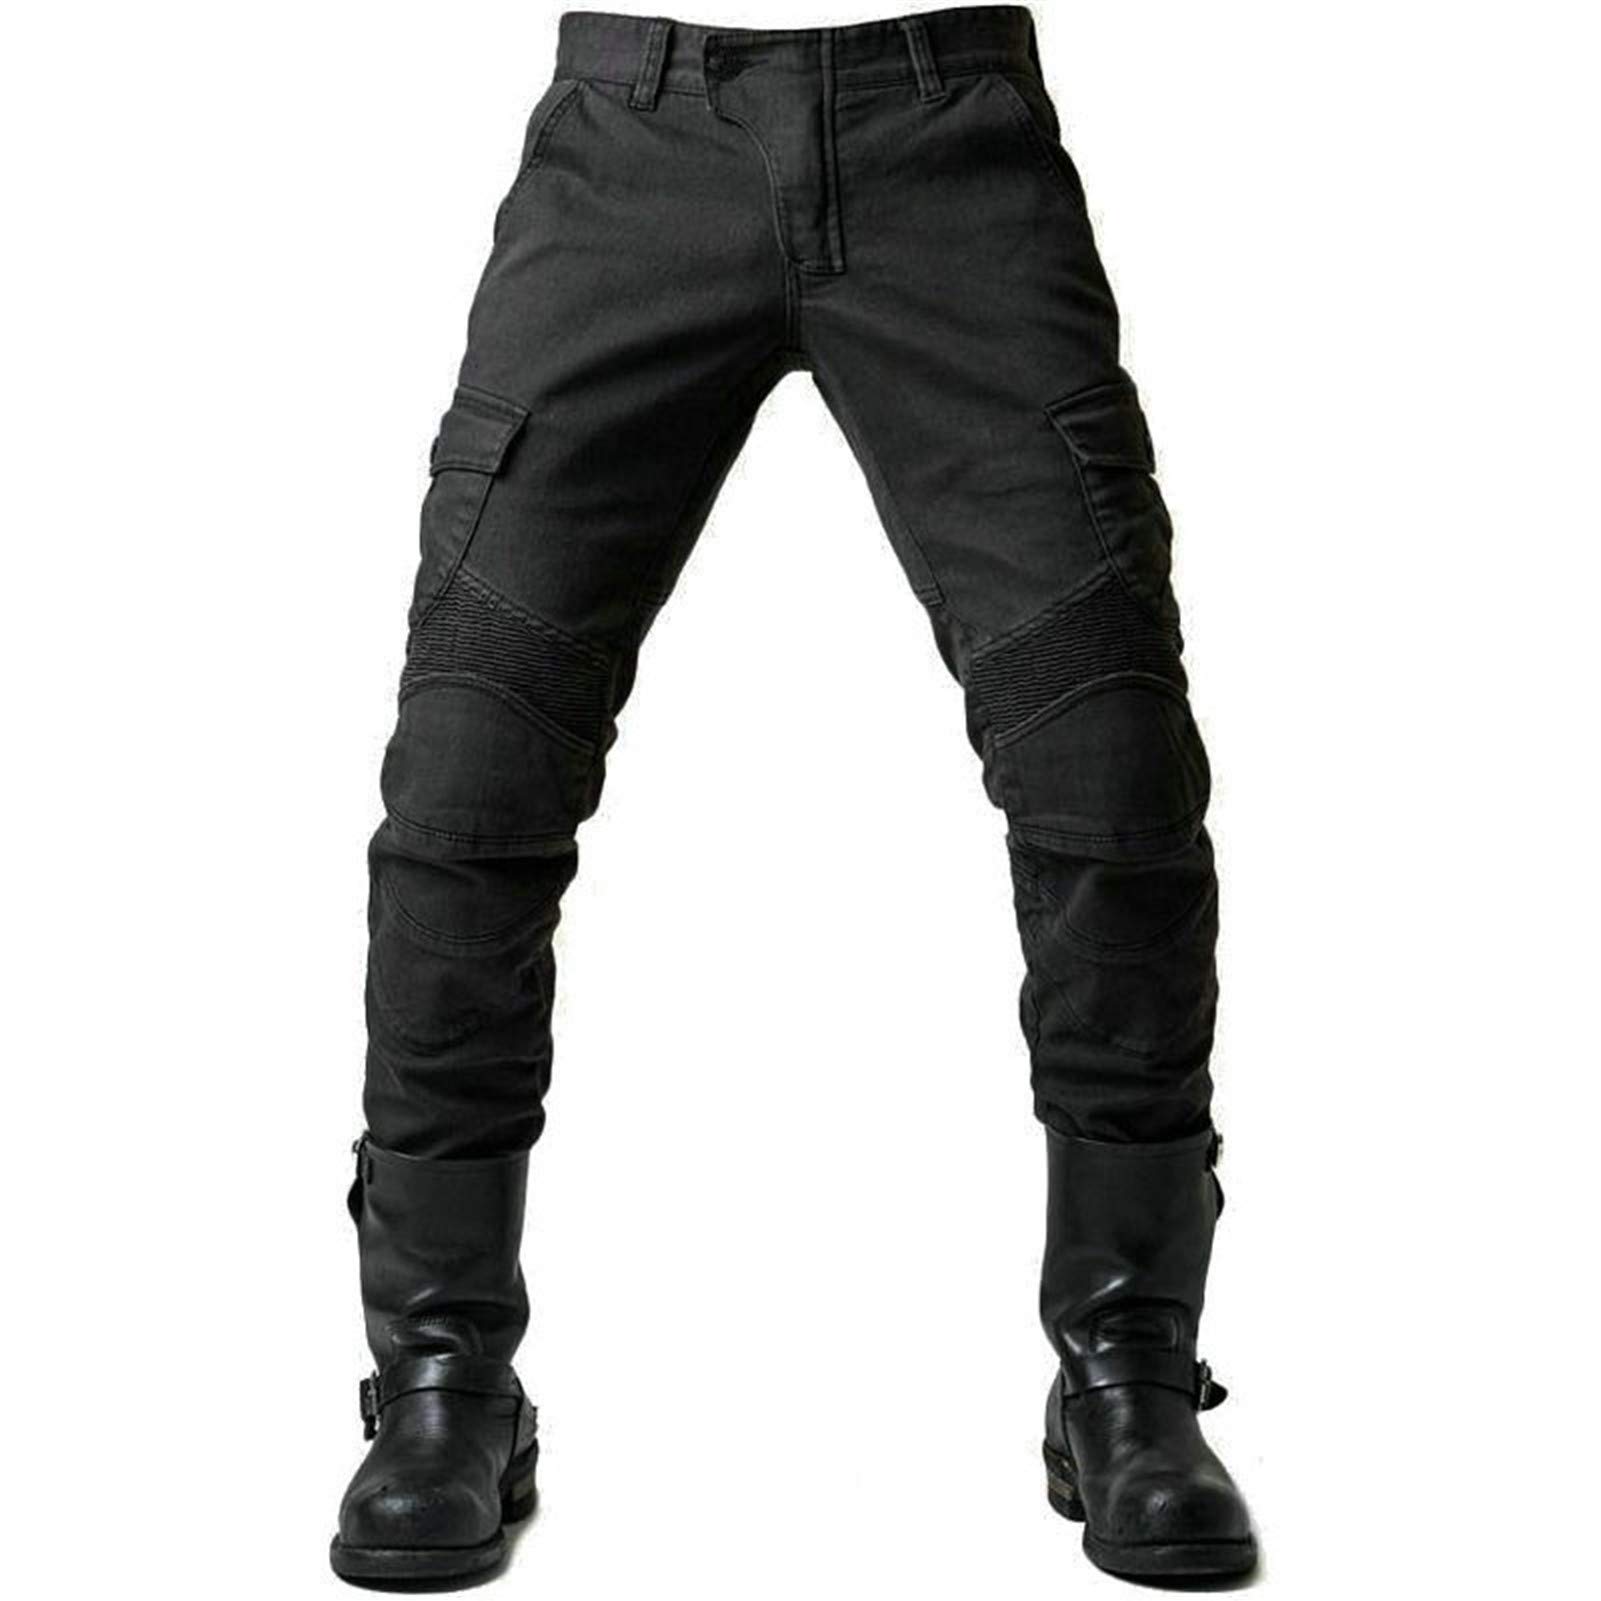 Herren Motorradhose Denim Jeans Hose Motocross Hose Jeans mit 2 Paar Schutzpolster mit Schutzfutter (Schwarz, 2XL) von BEDSETS